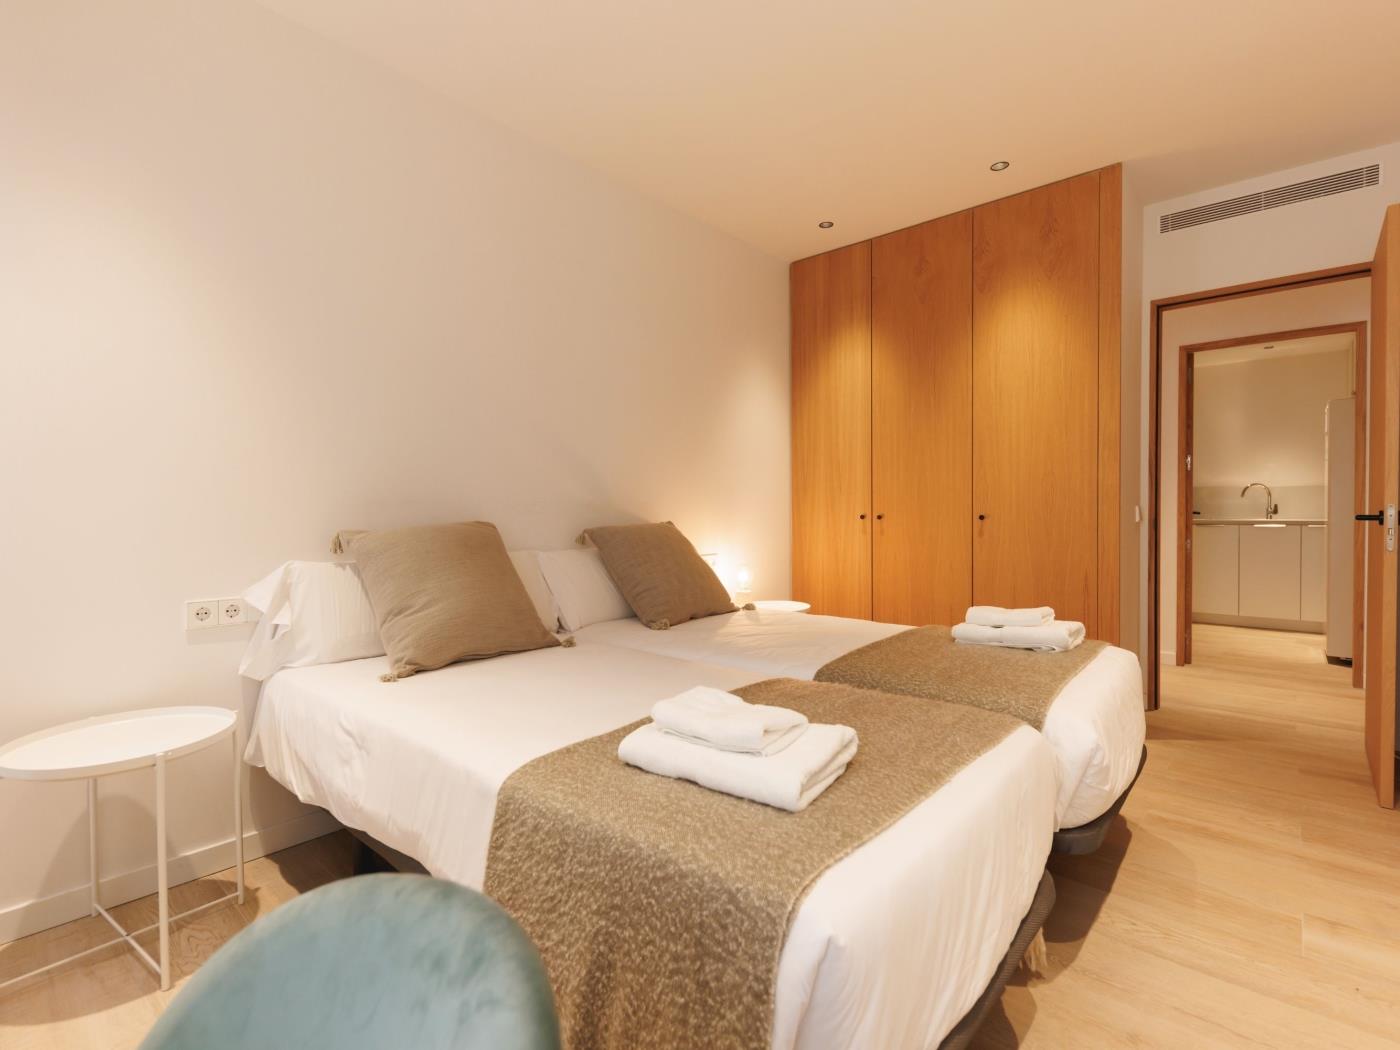 Bravissimo Centro, moderno piso de 2 dormitorios en Girona